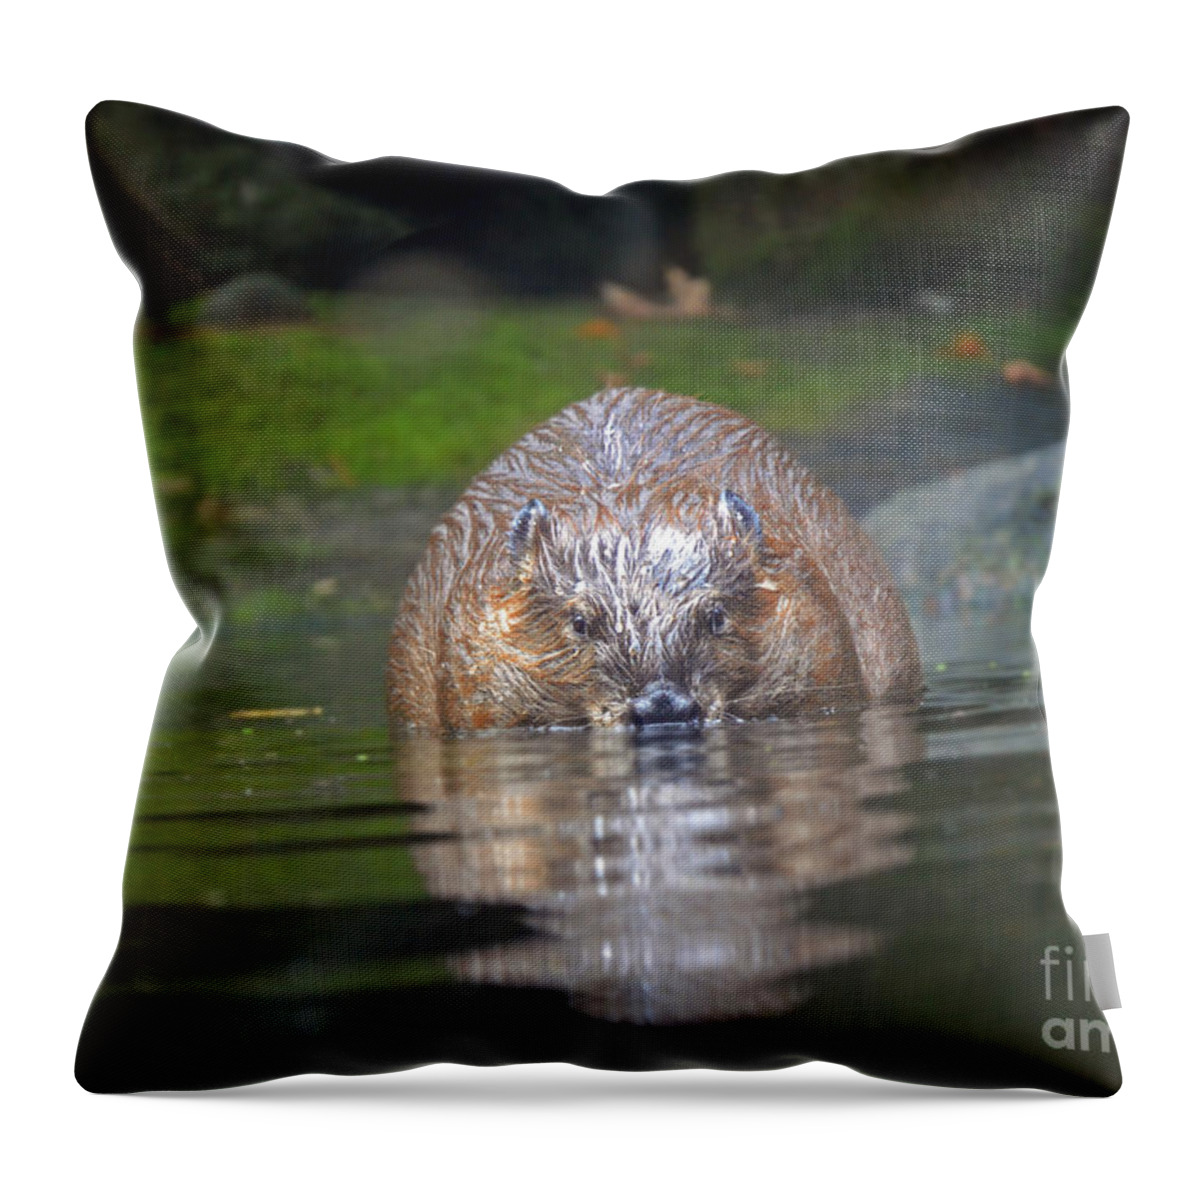 Beaver Throw Pillow featuring the photograph Wet Beaver by Frank Larkin